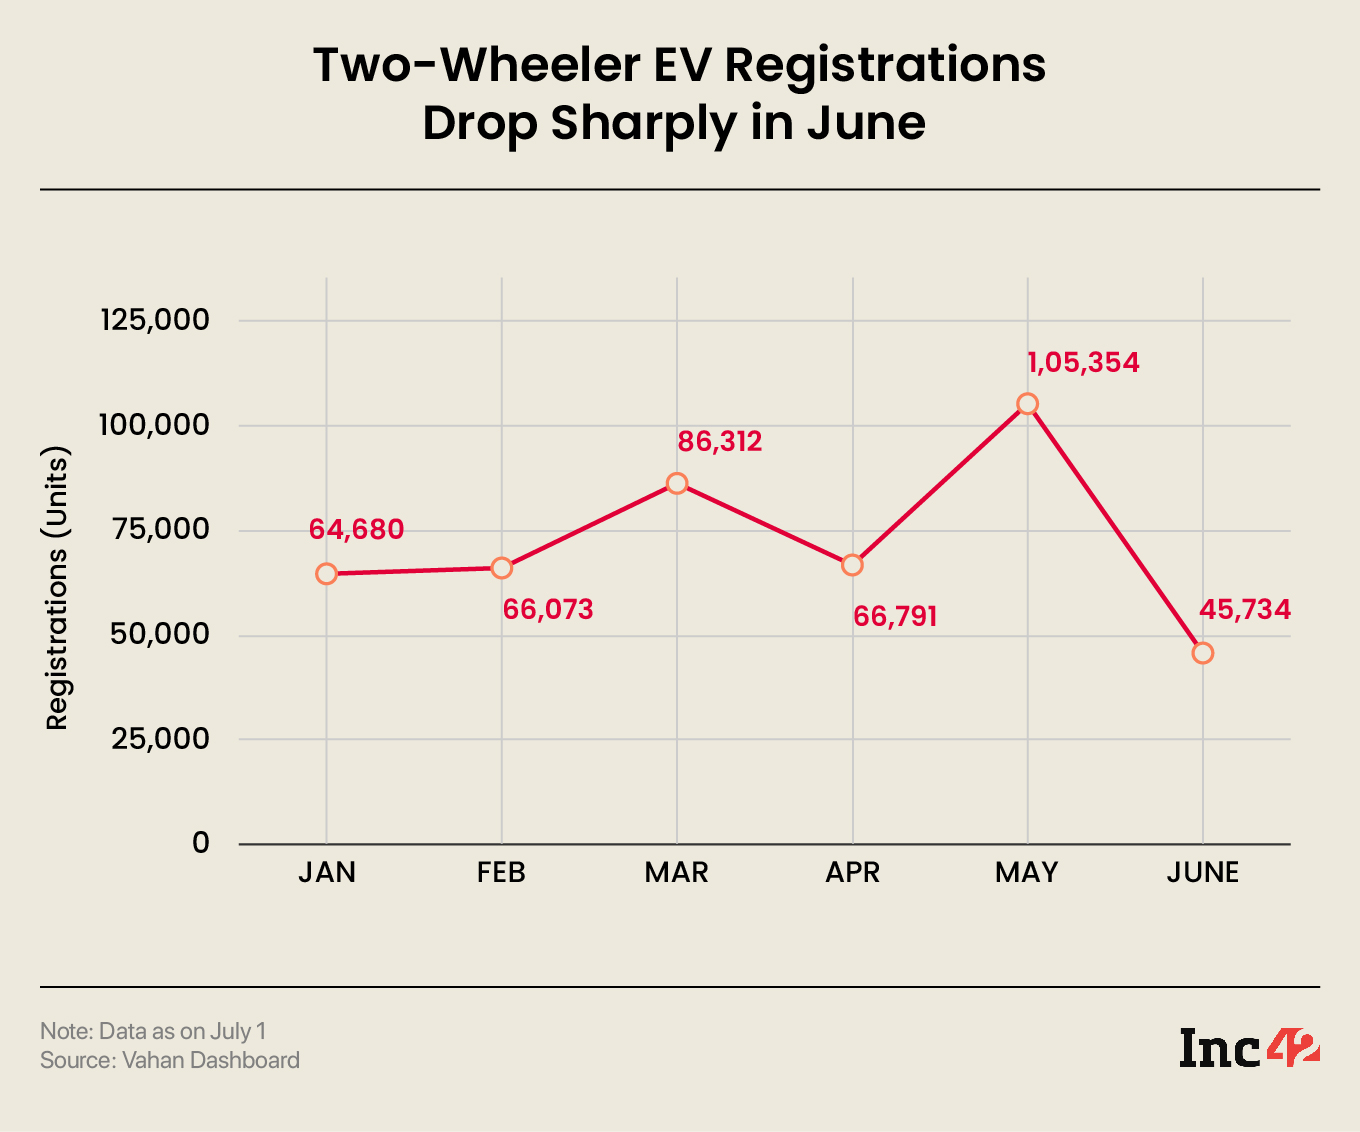 Two-Wheeler EV Registrations Drop Sharply in June